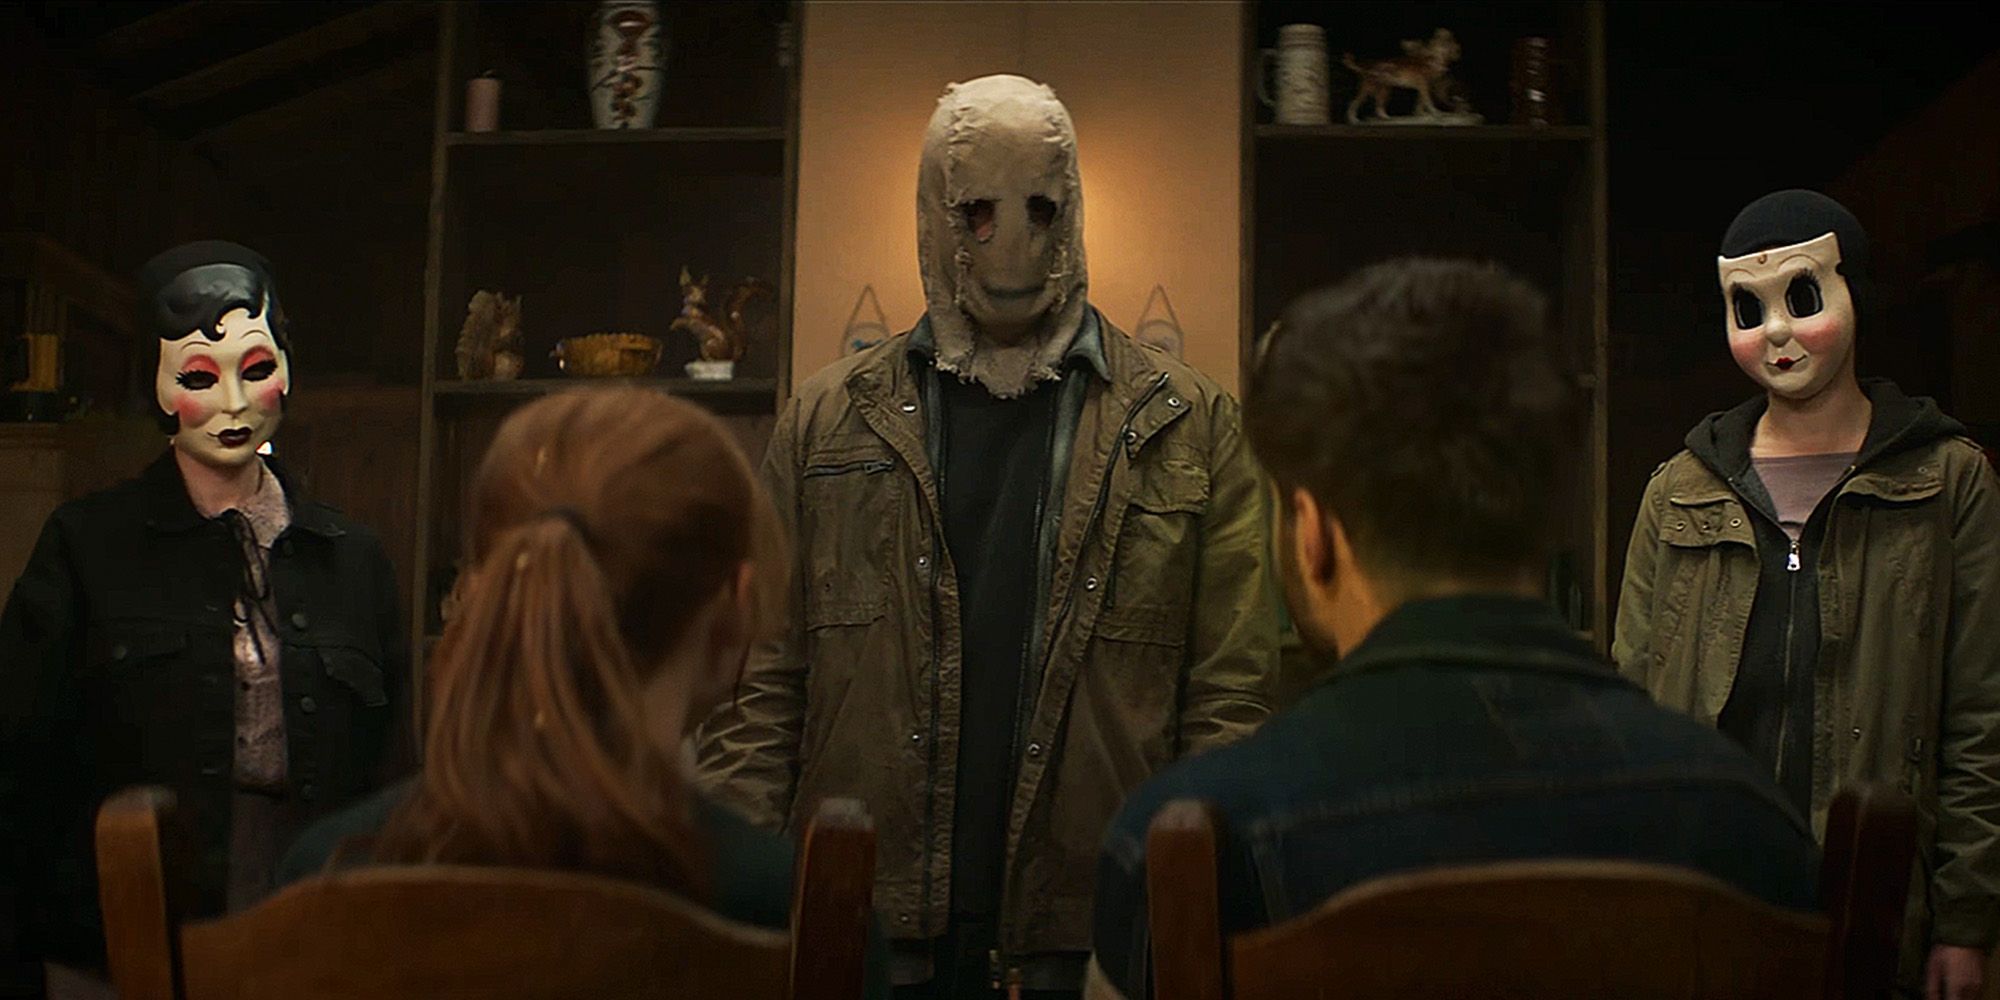 La nueva trilogía de The Strangers está arriesgando lo que hizo que los asesinos enmascarados de la franquicia fueran tan aterradores